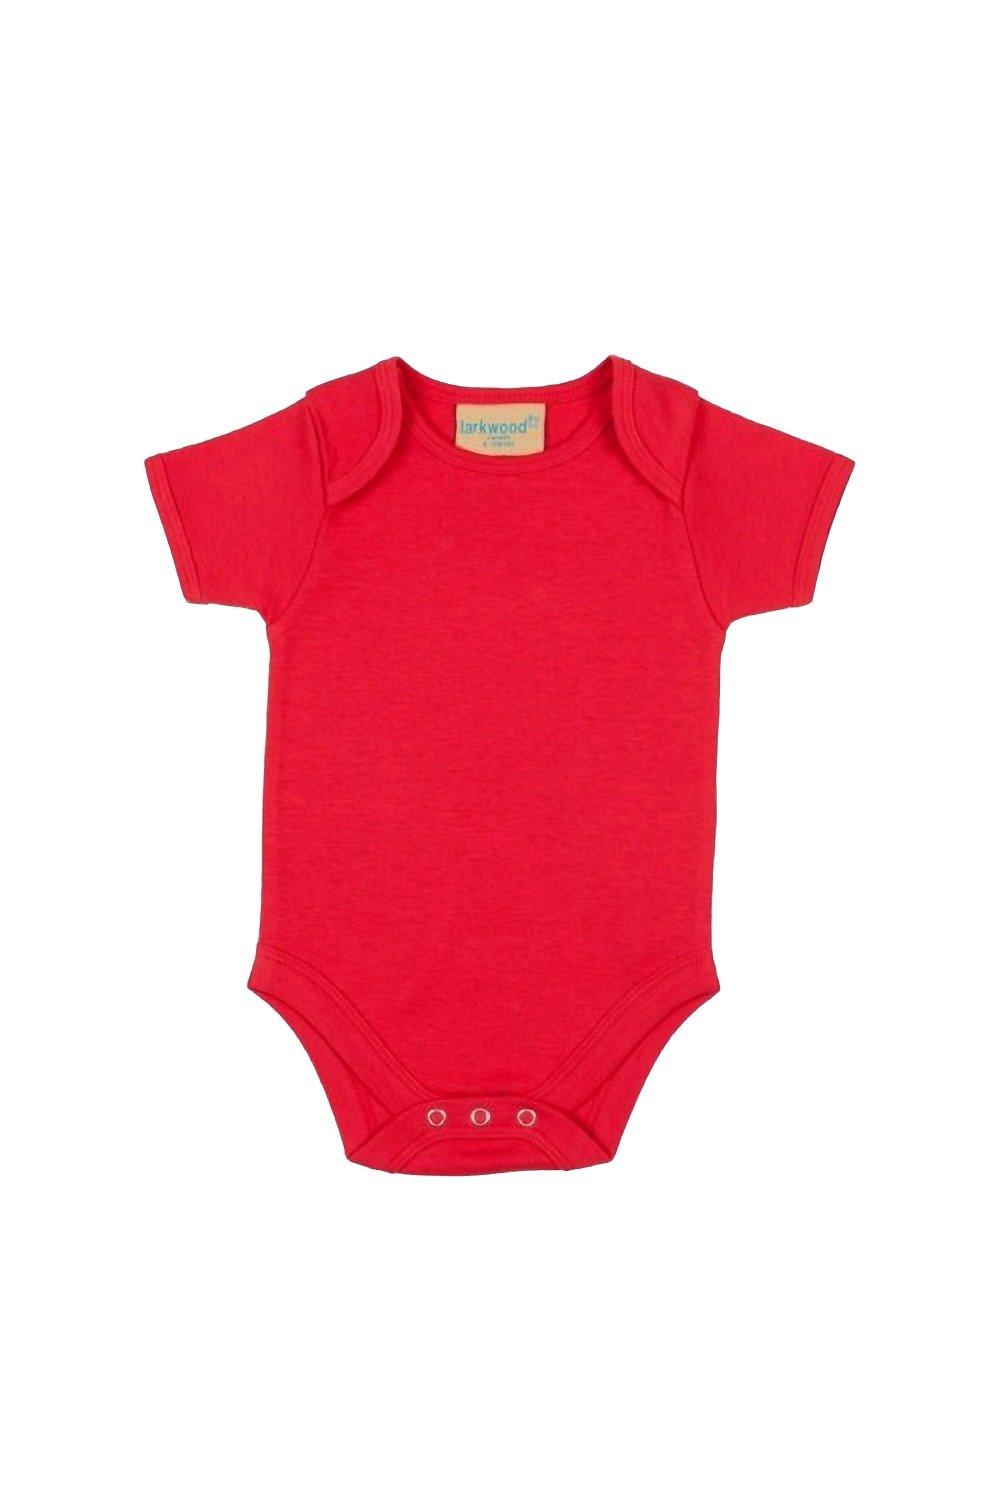 Боди с короткими рукавами и вырезом-конвертом Larkwood, красный детское боди с длинным рукавом на возраст 0 12 месяцев